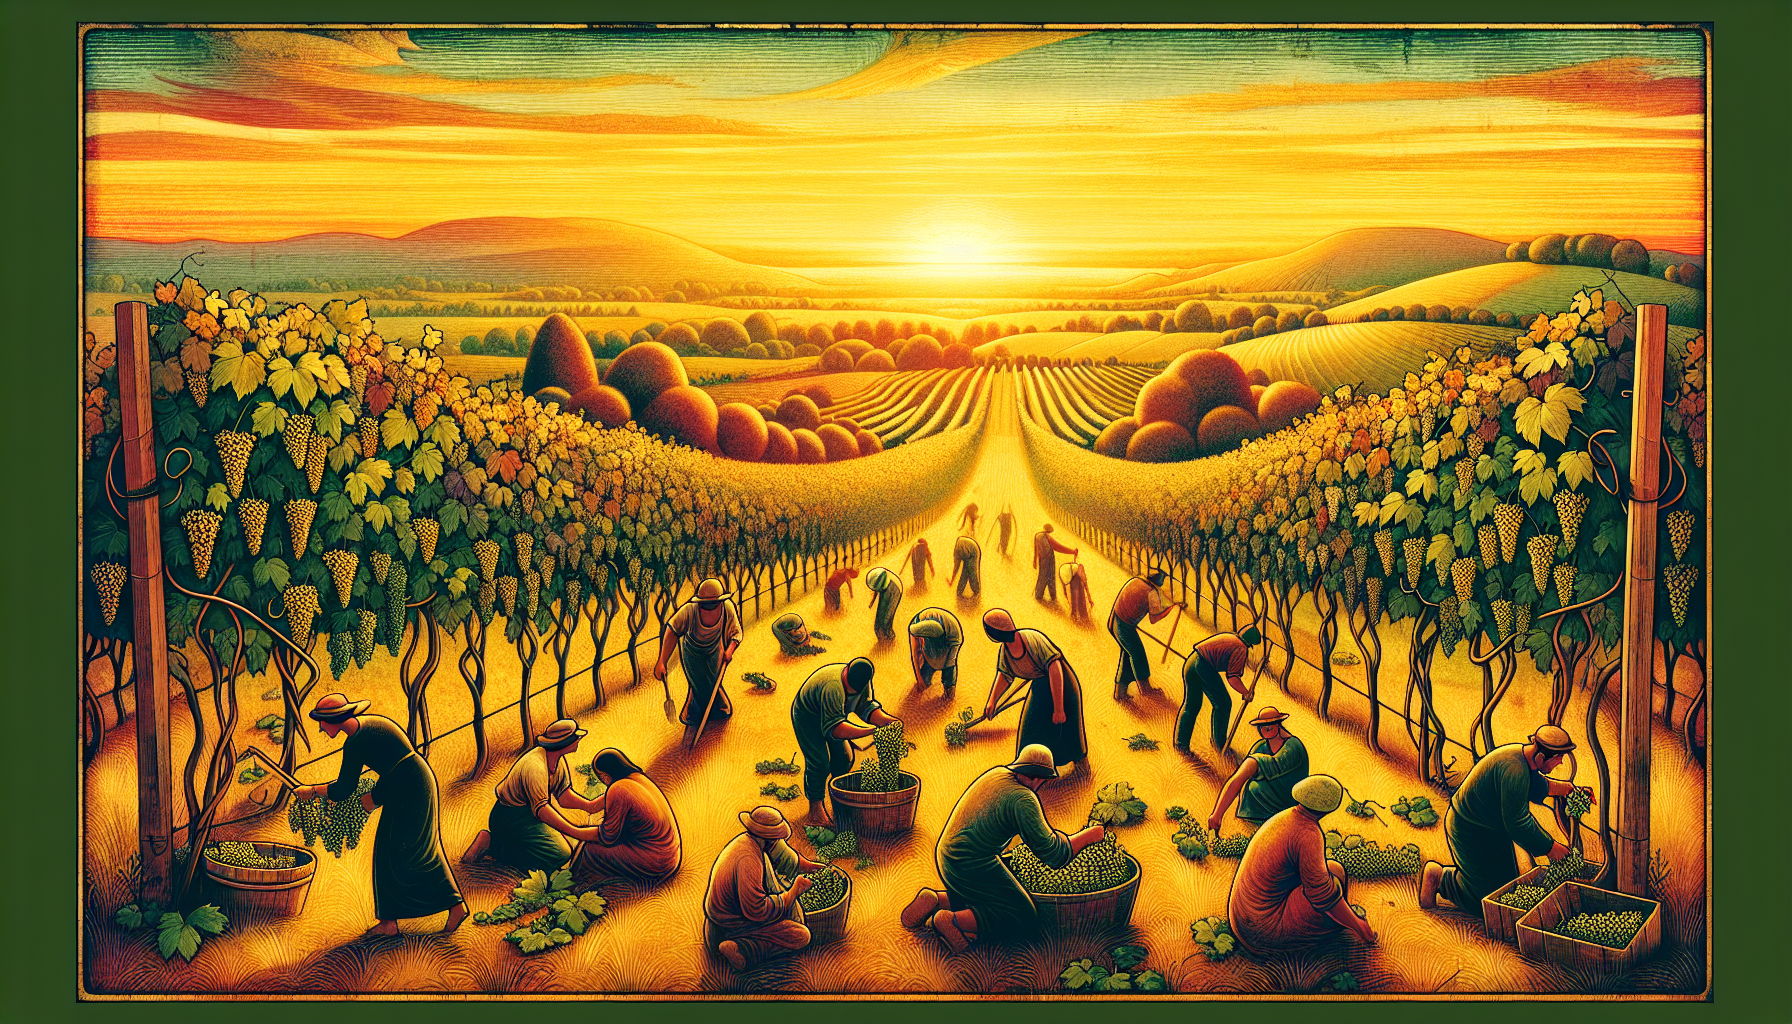 Un pintoresco viñedo en tiempo de cosecha al atardecer, iluminado por la cálida luz del sol, con trabajadores recolectando uvas y al fondo colinas suavemente onduladas, en un estilo de pintura renacen